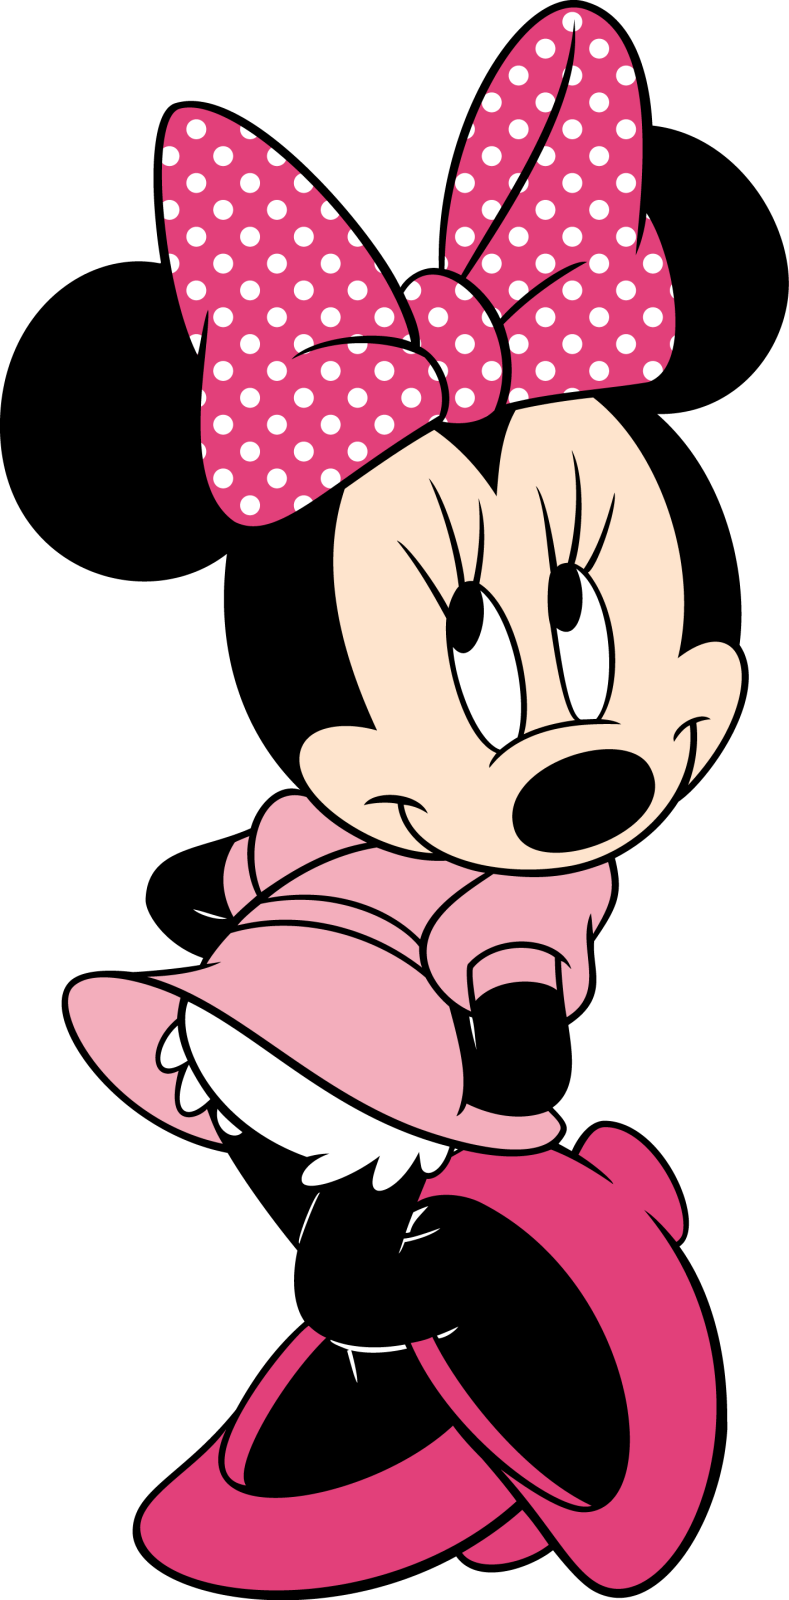 Descargar Im??genes Gratis: Minnie Mouse PNG Sin Fondo.